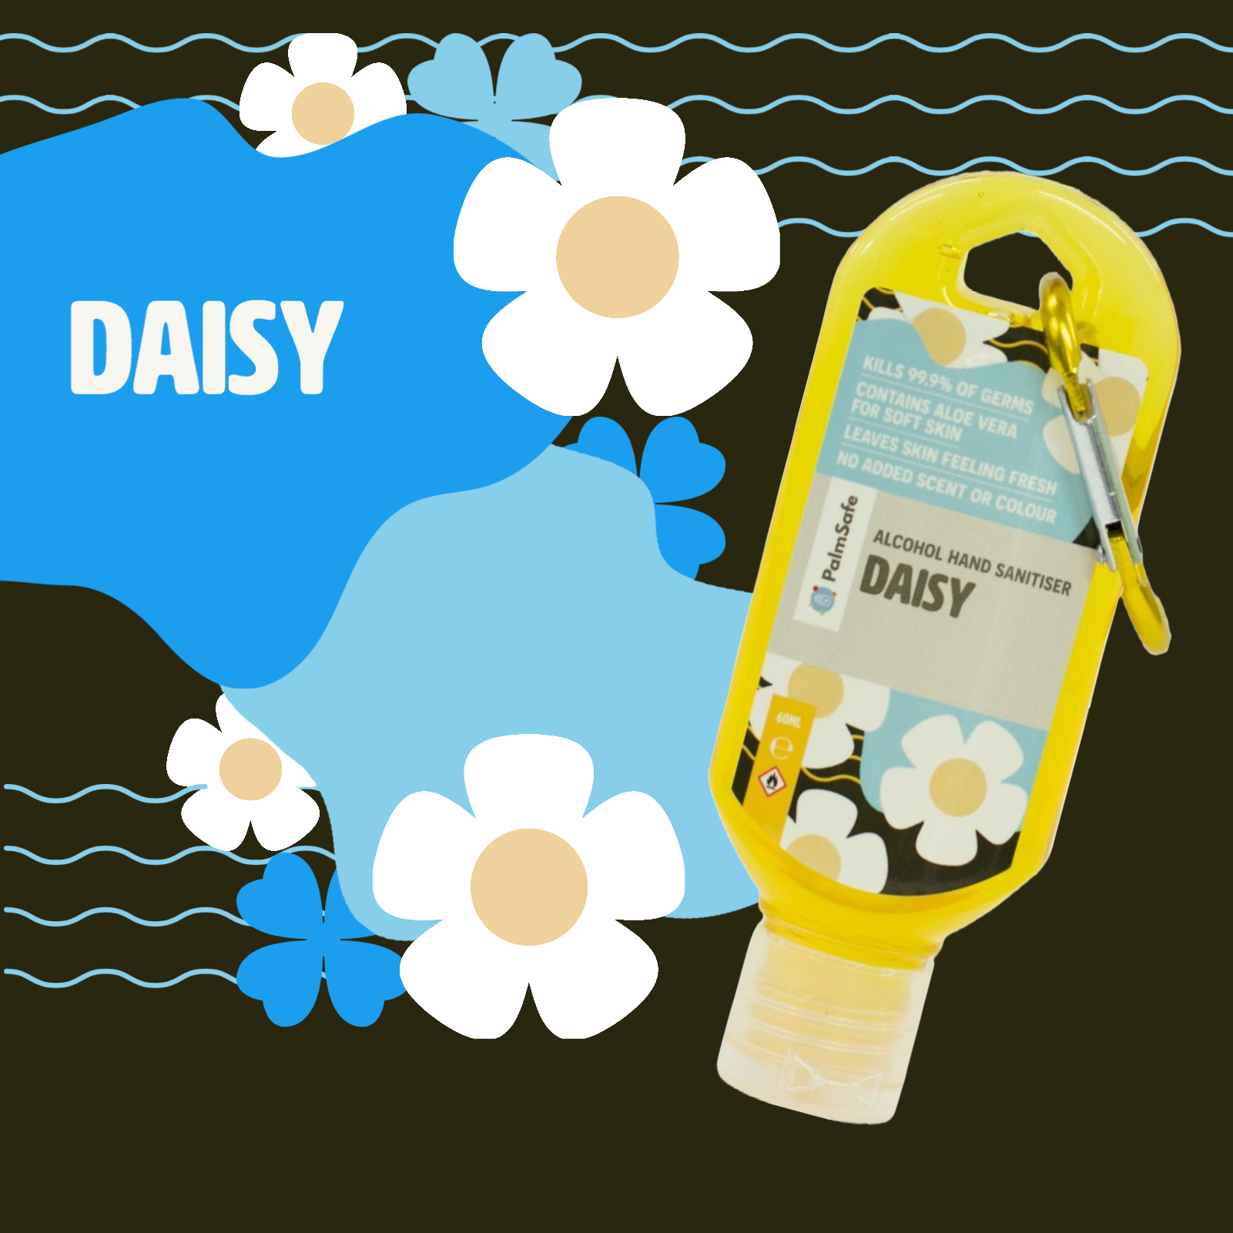 Daisy